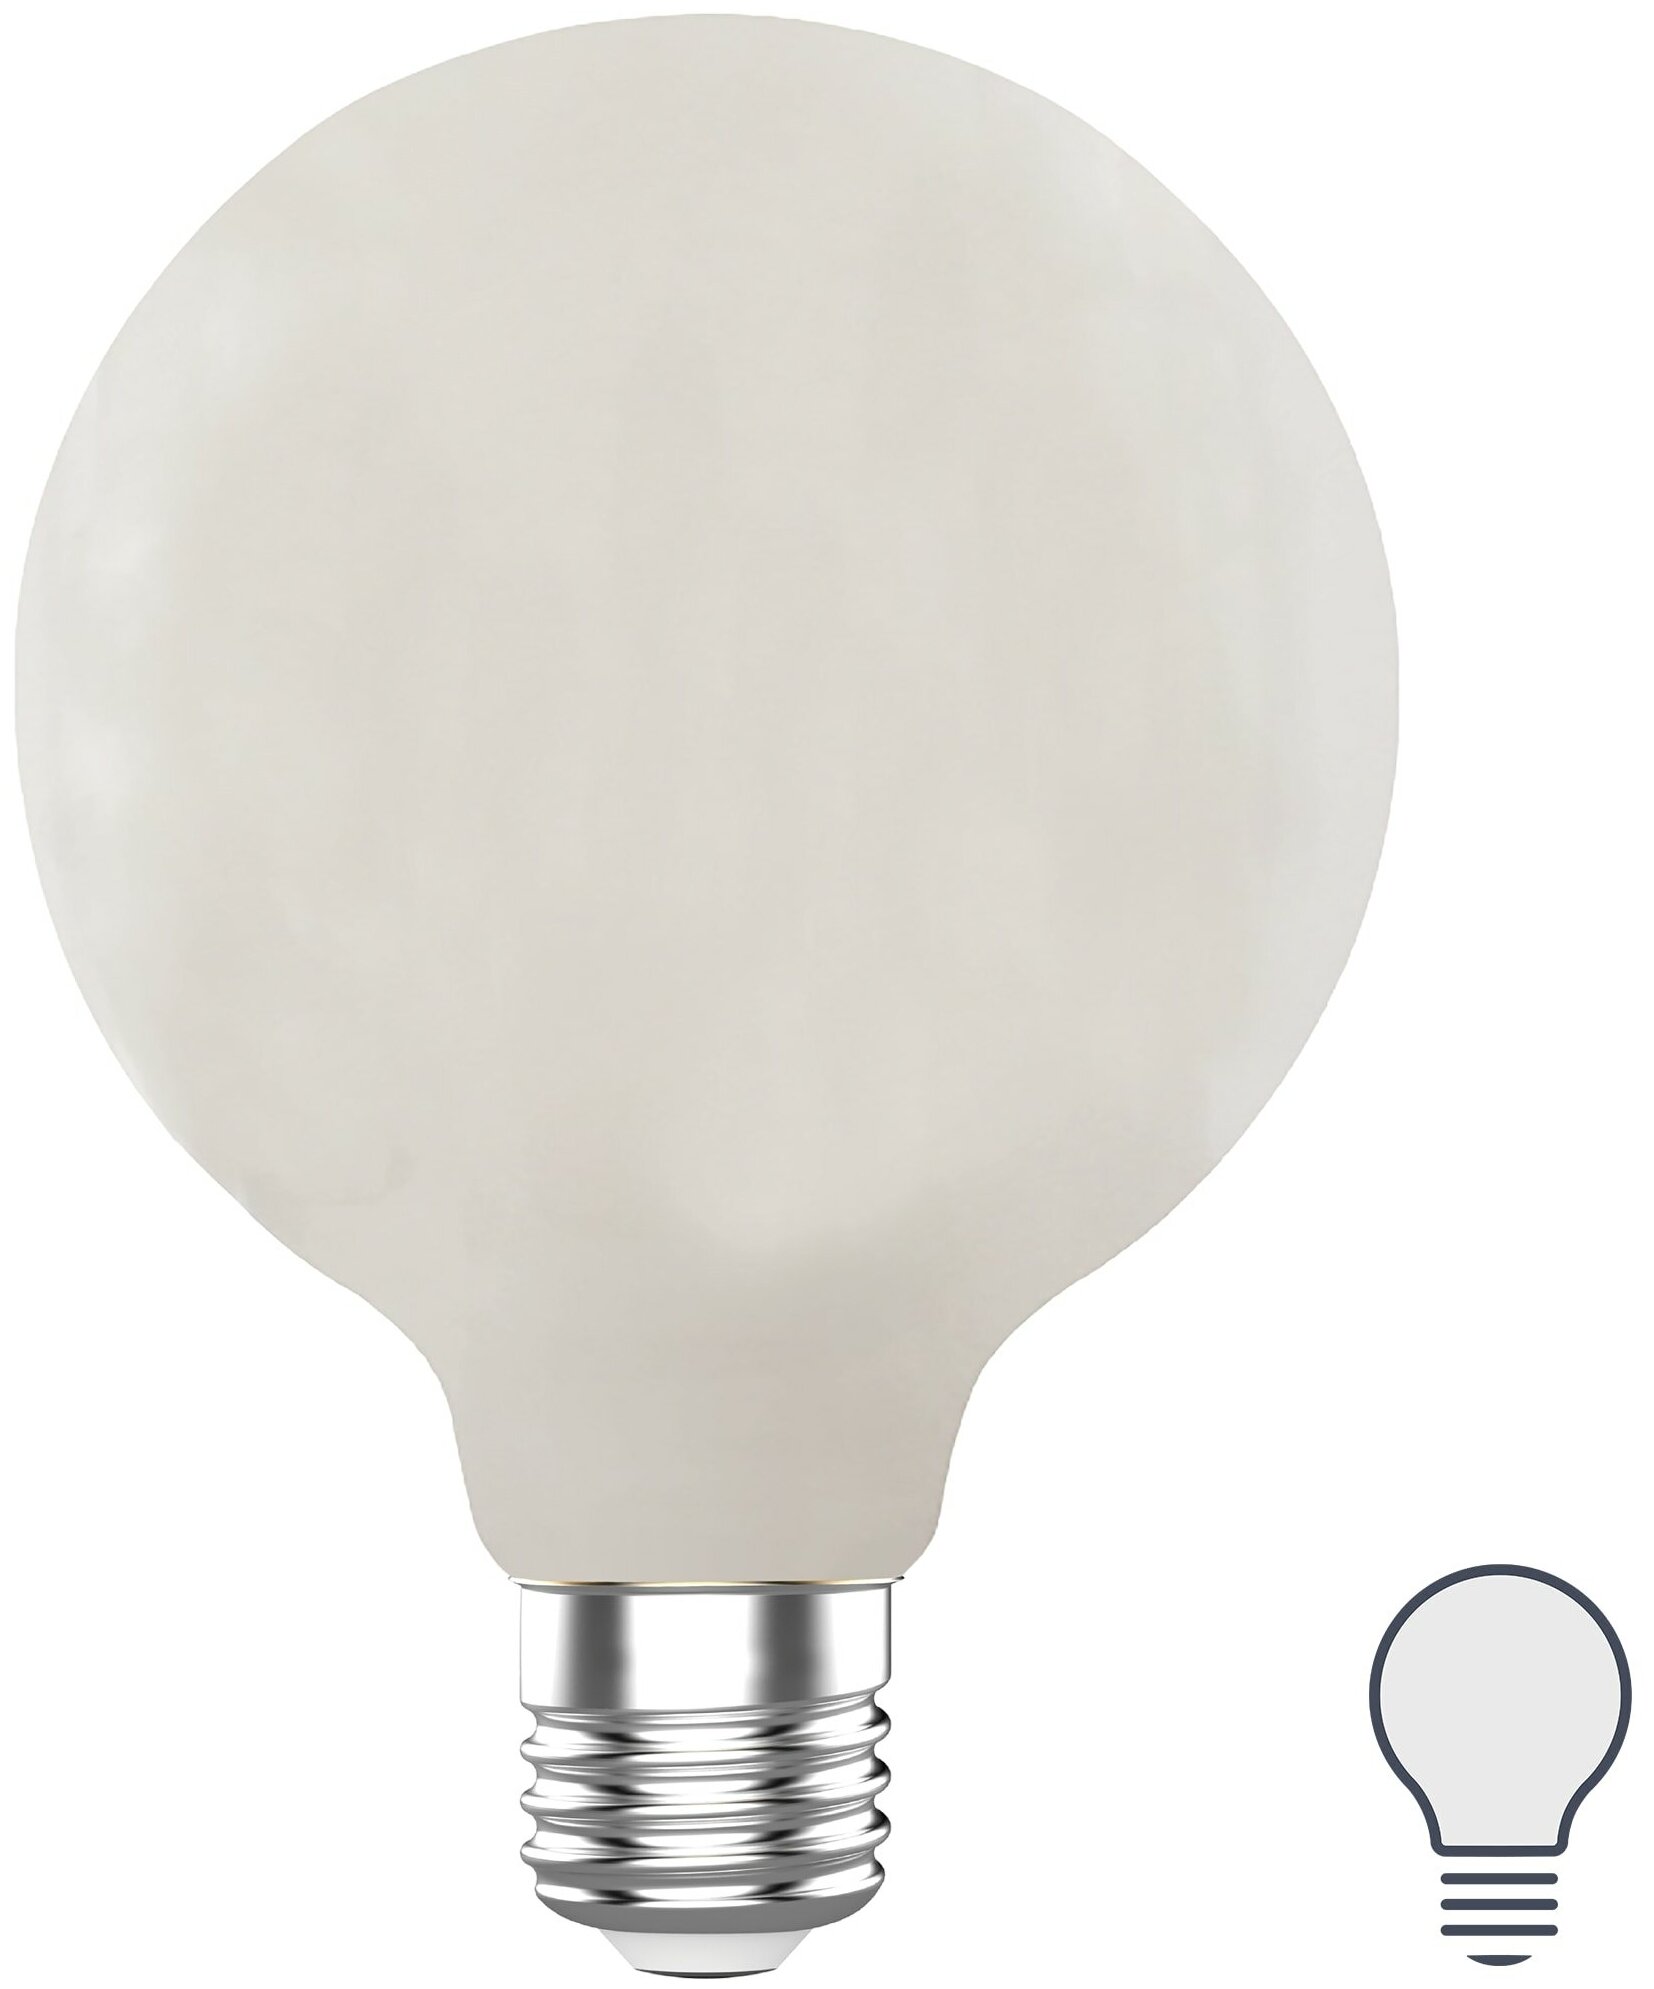 Лампа светодиодная Lexman G95 E27 220-240 В 9 Вт матовая 1055 лм нейтральный белый свет - фотография № 1